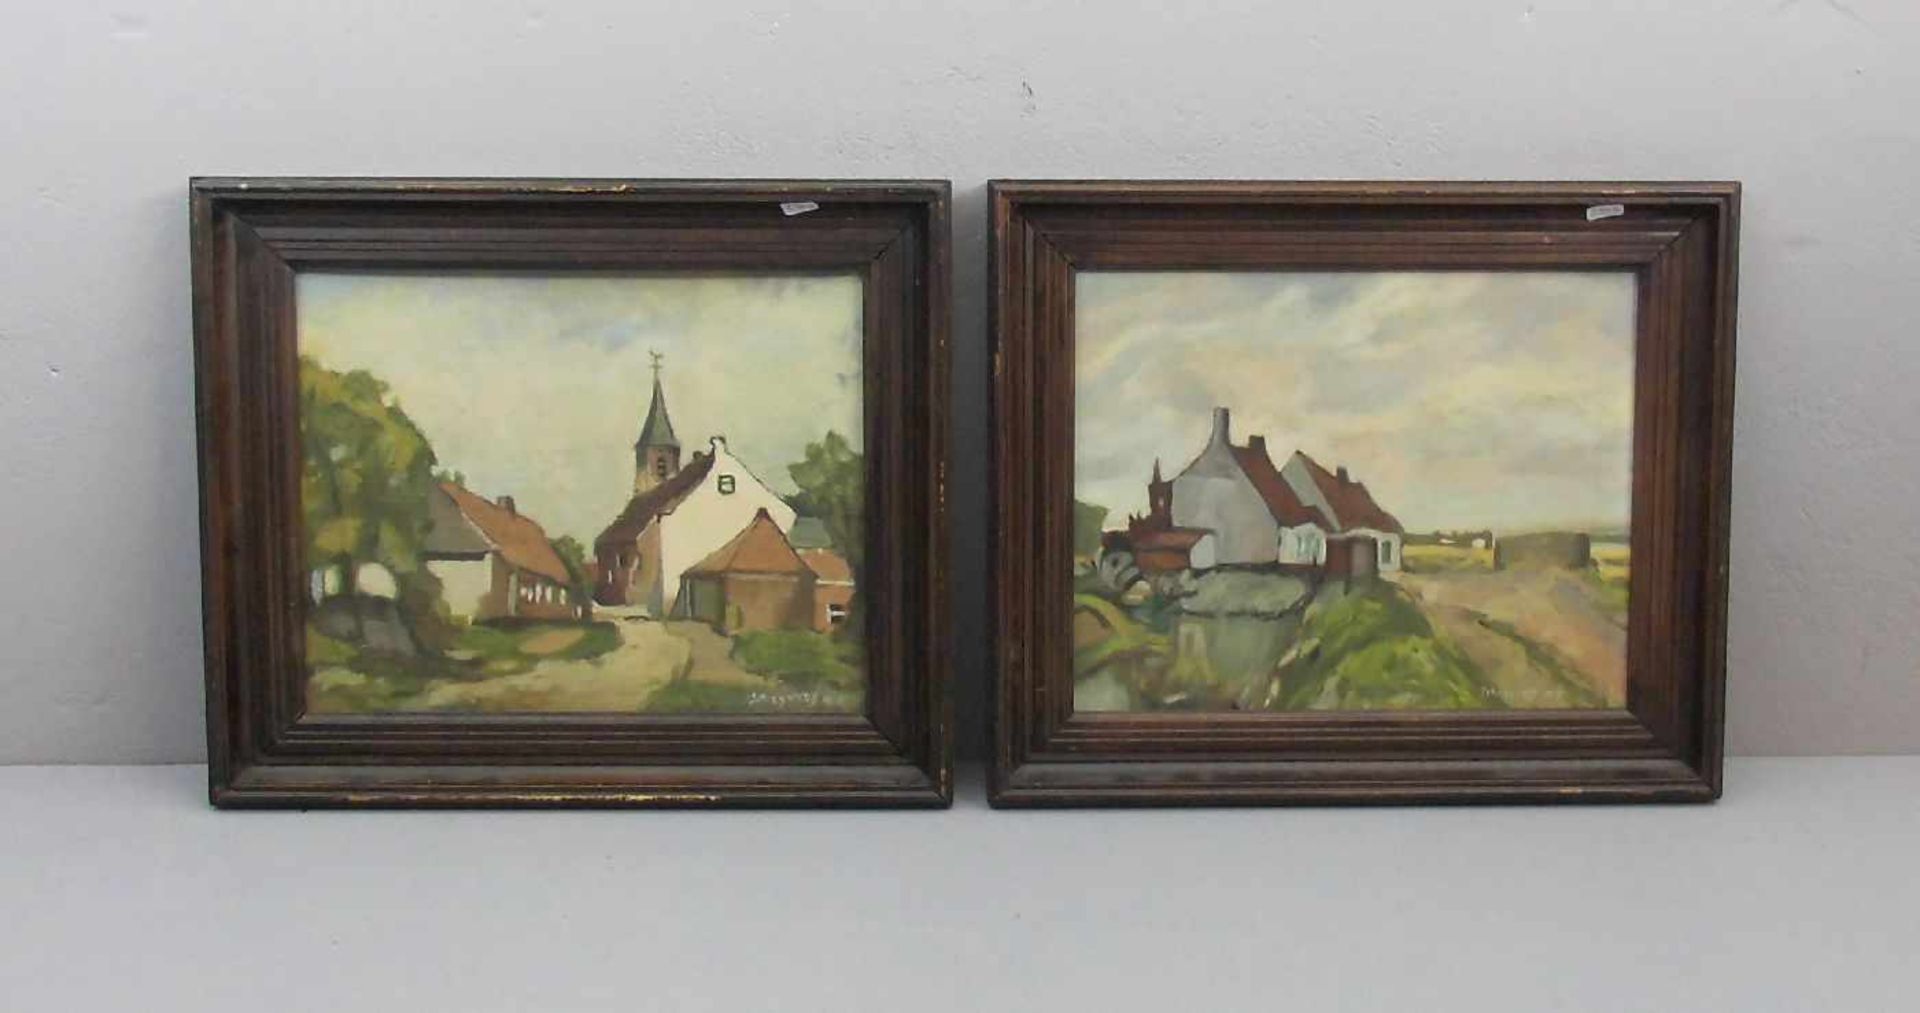 SCHRYVERS HC (oder NC, Maler des 20. Jh.), Paar Gemälde / paintings: "Dorfansicht mit Kirchturm" und